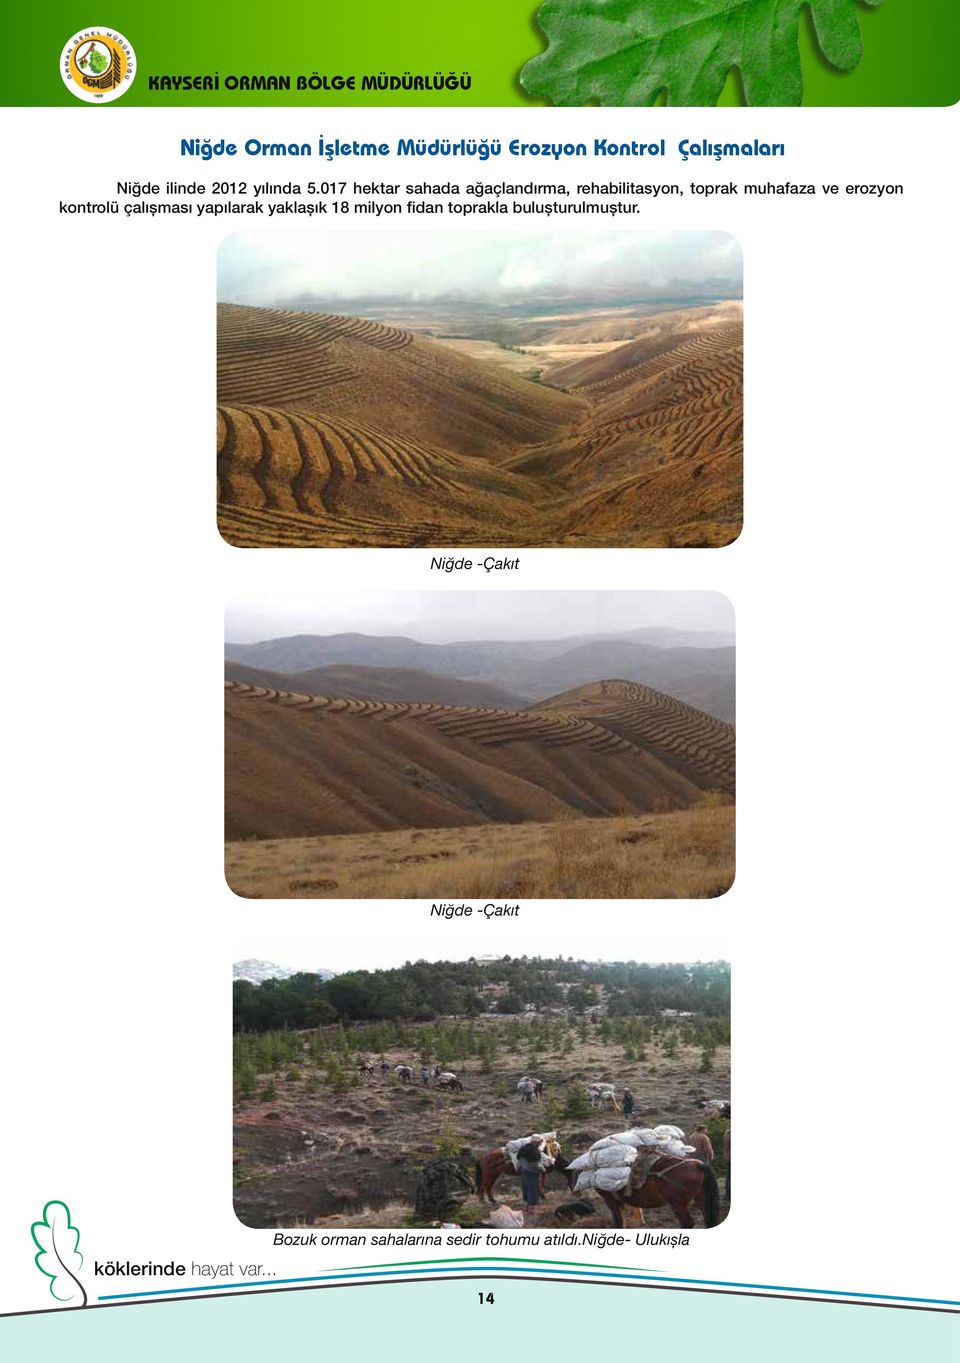 017 hektar sahada ağaçlandırma, rehabilitasyon, toprak muhafaza ve erozyon kontrolü